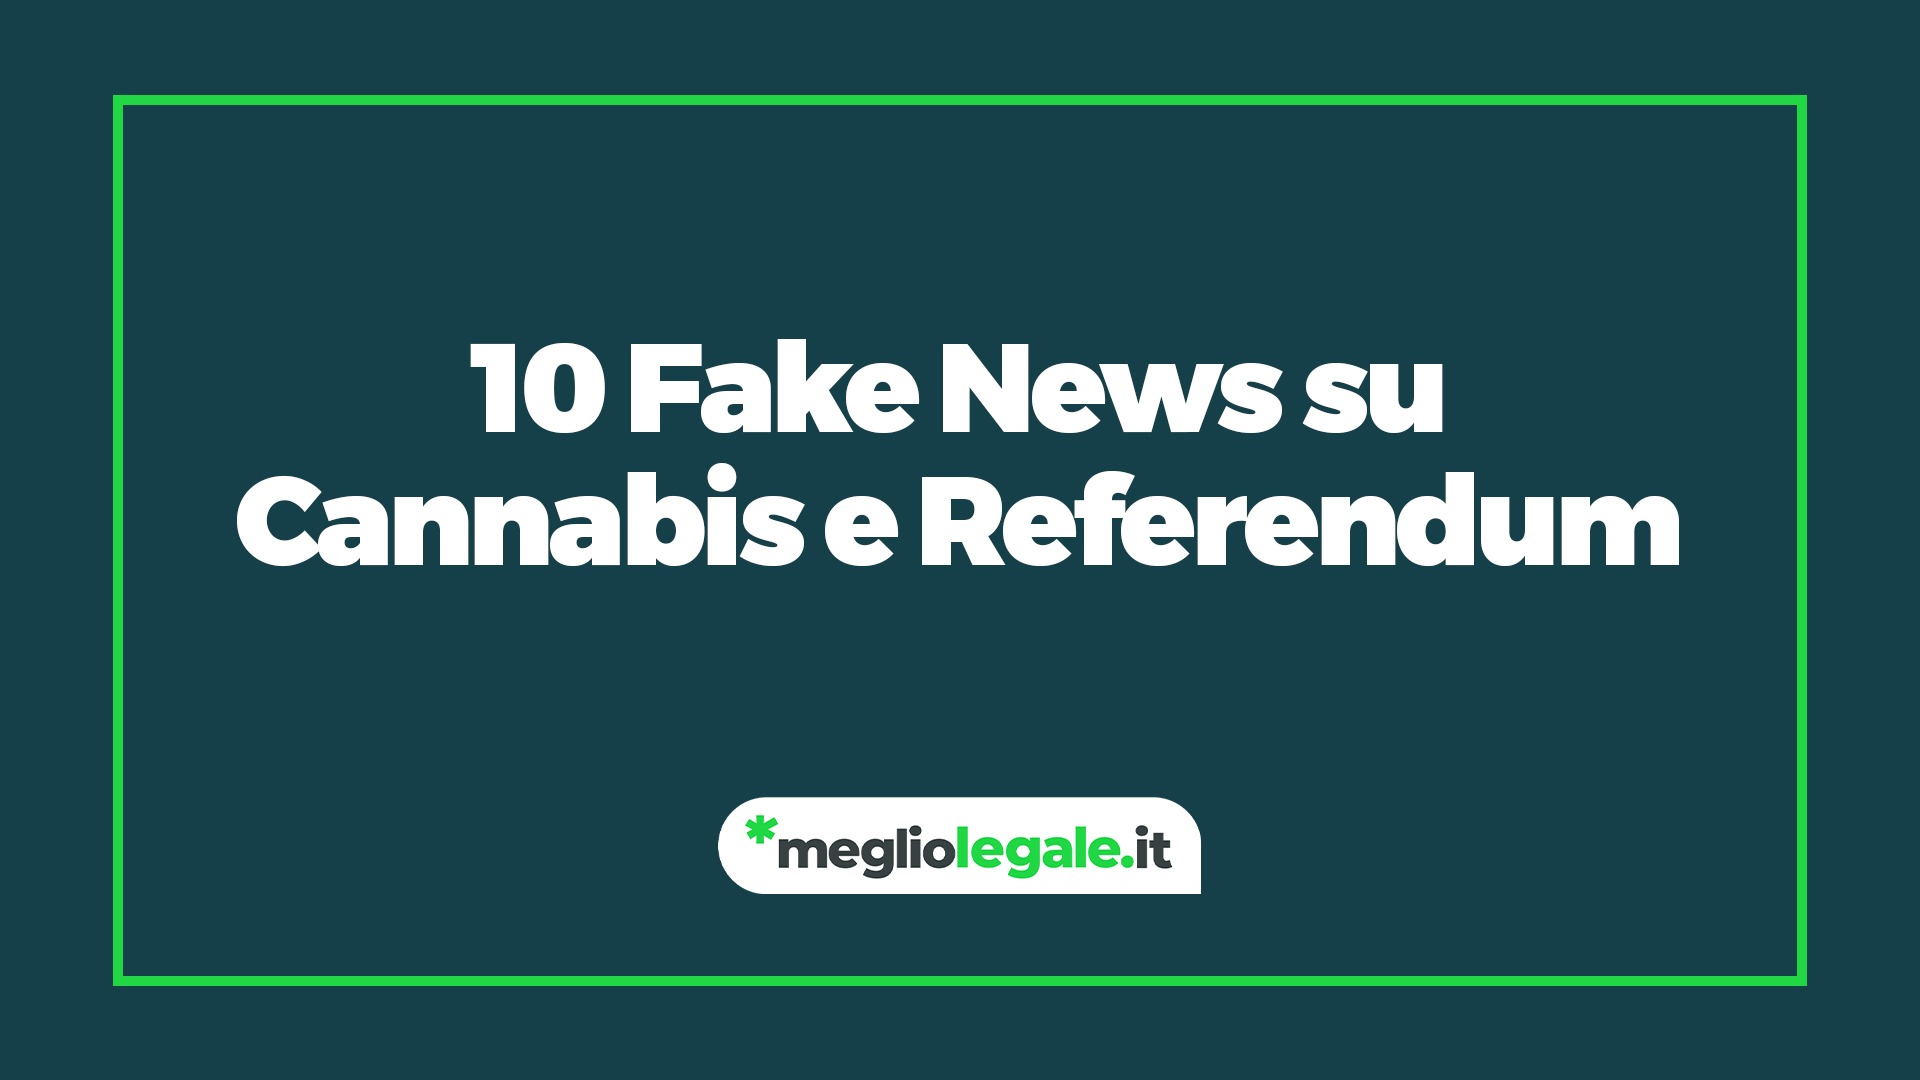 fake news cannabis